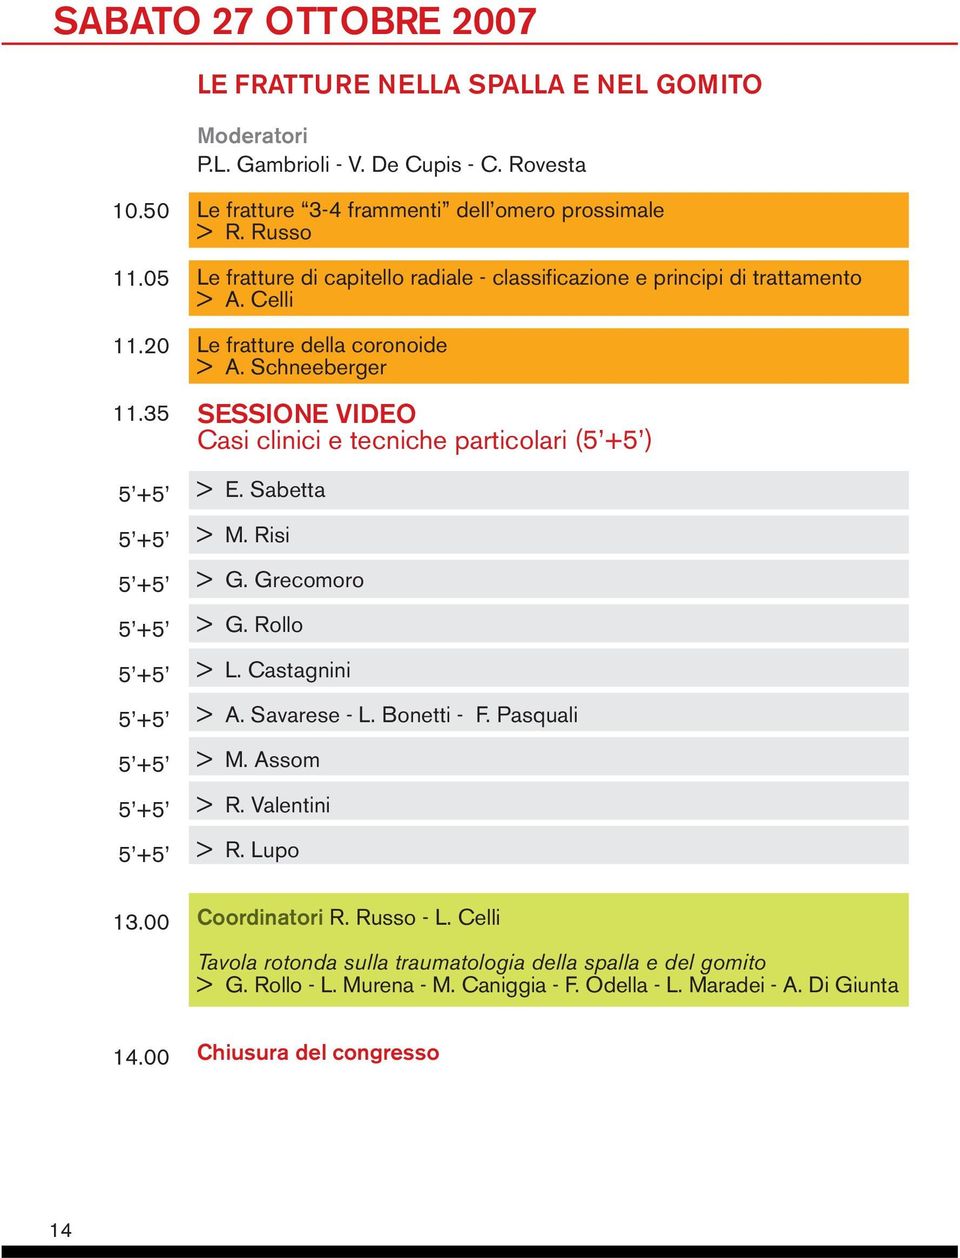 Celli Le fratture della coronoide > A. Schneeberger SESSIONE VIDEO Casi clinici e tecniche particolari () > E. Sabetta > M. Risi > G. Grecomoro > G. Rollo > L. Castagnini > A.